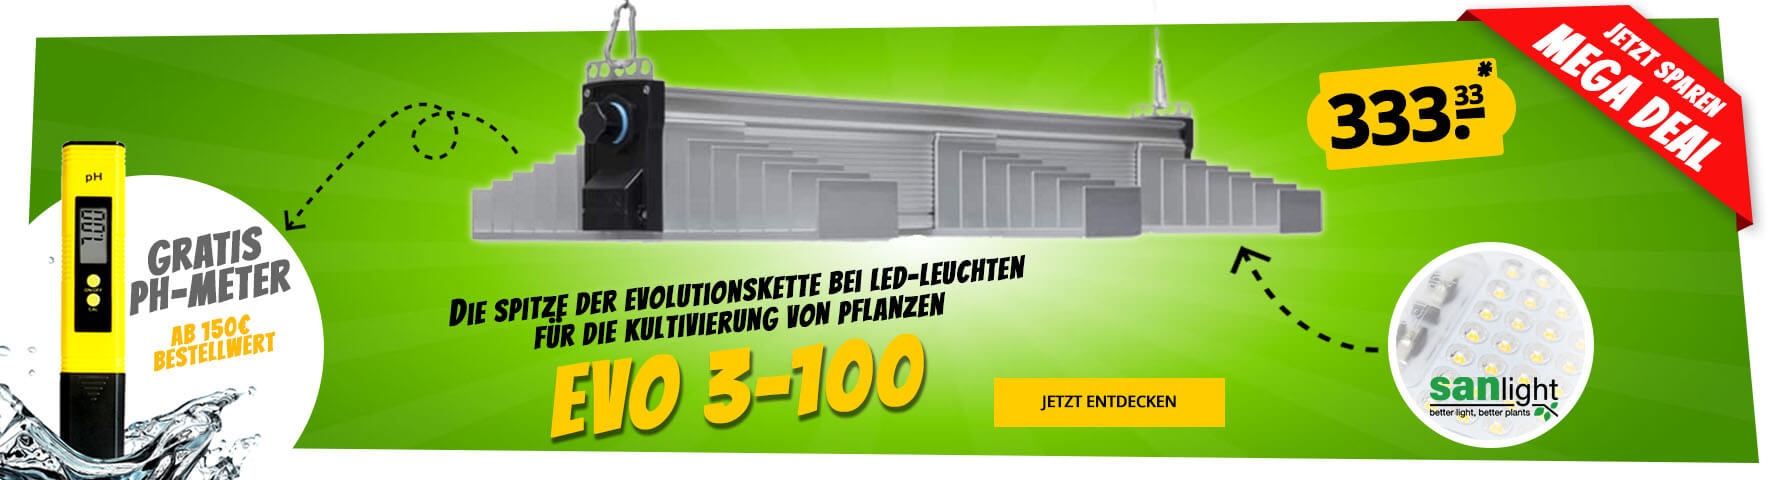 Growversand Slider Grow LED Lampe Sanlight Evo3-100 pH-Meter gratis Megadeal